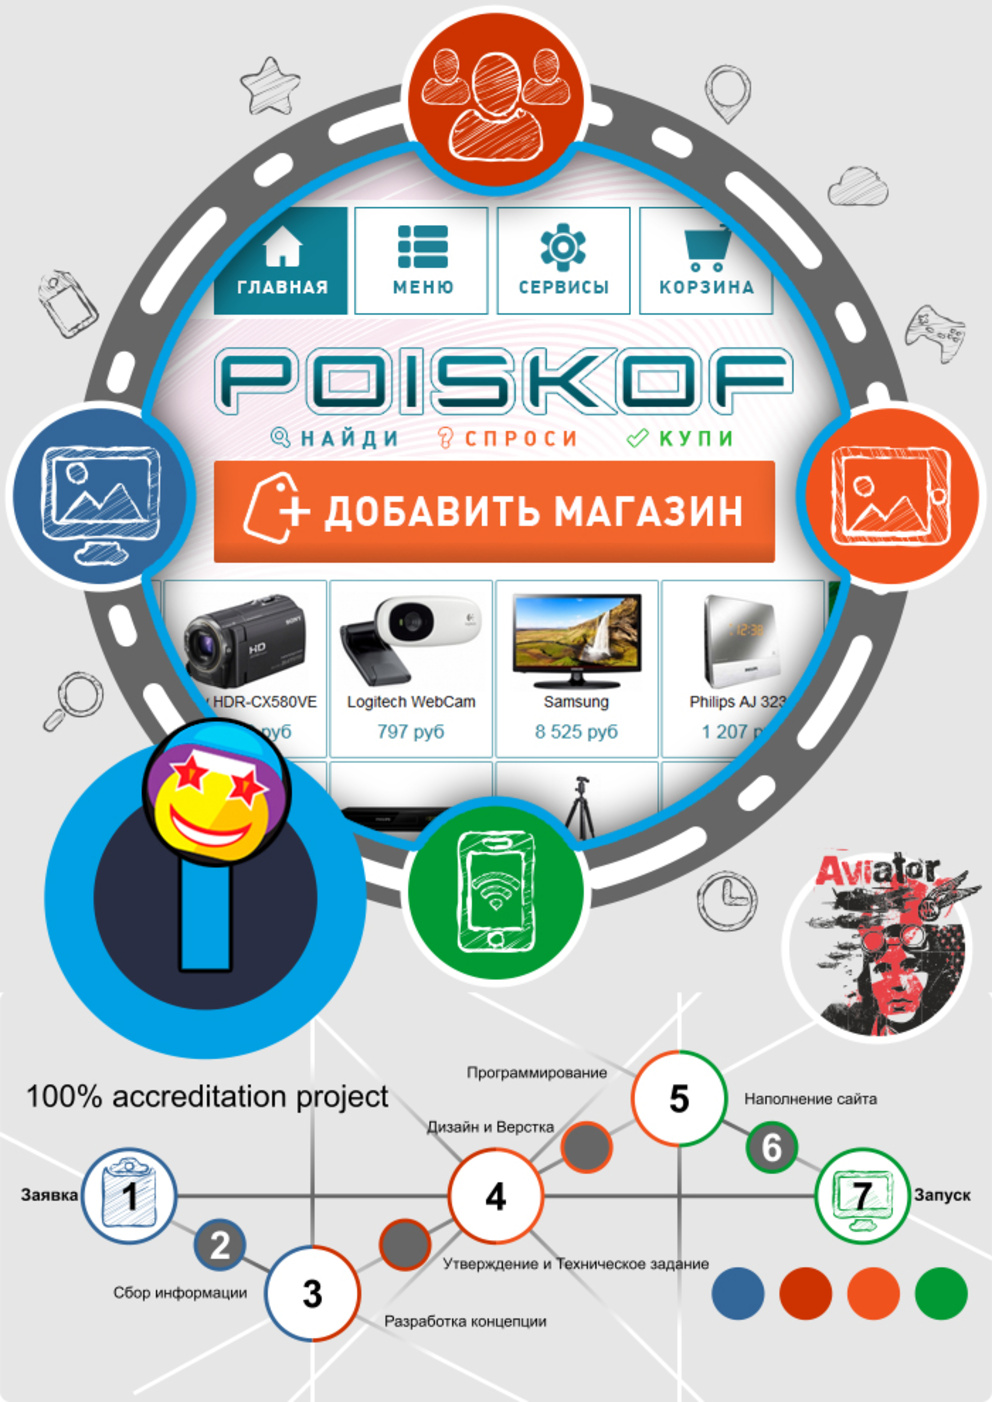 Poiskof - Система поиска товаров / Проект компании Supergud COM